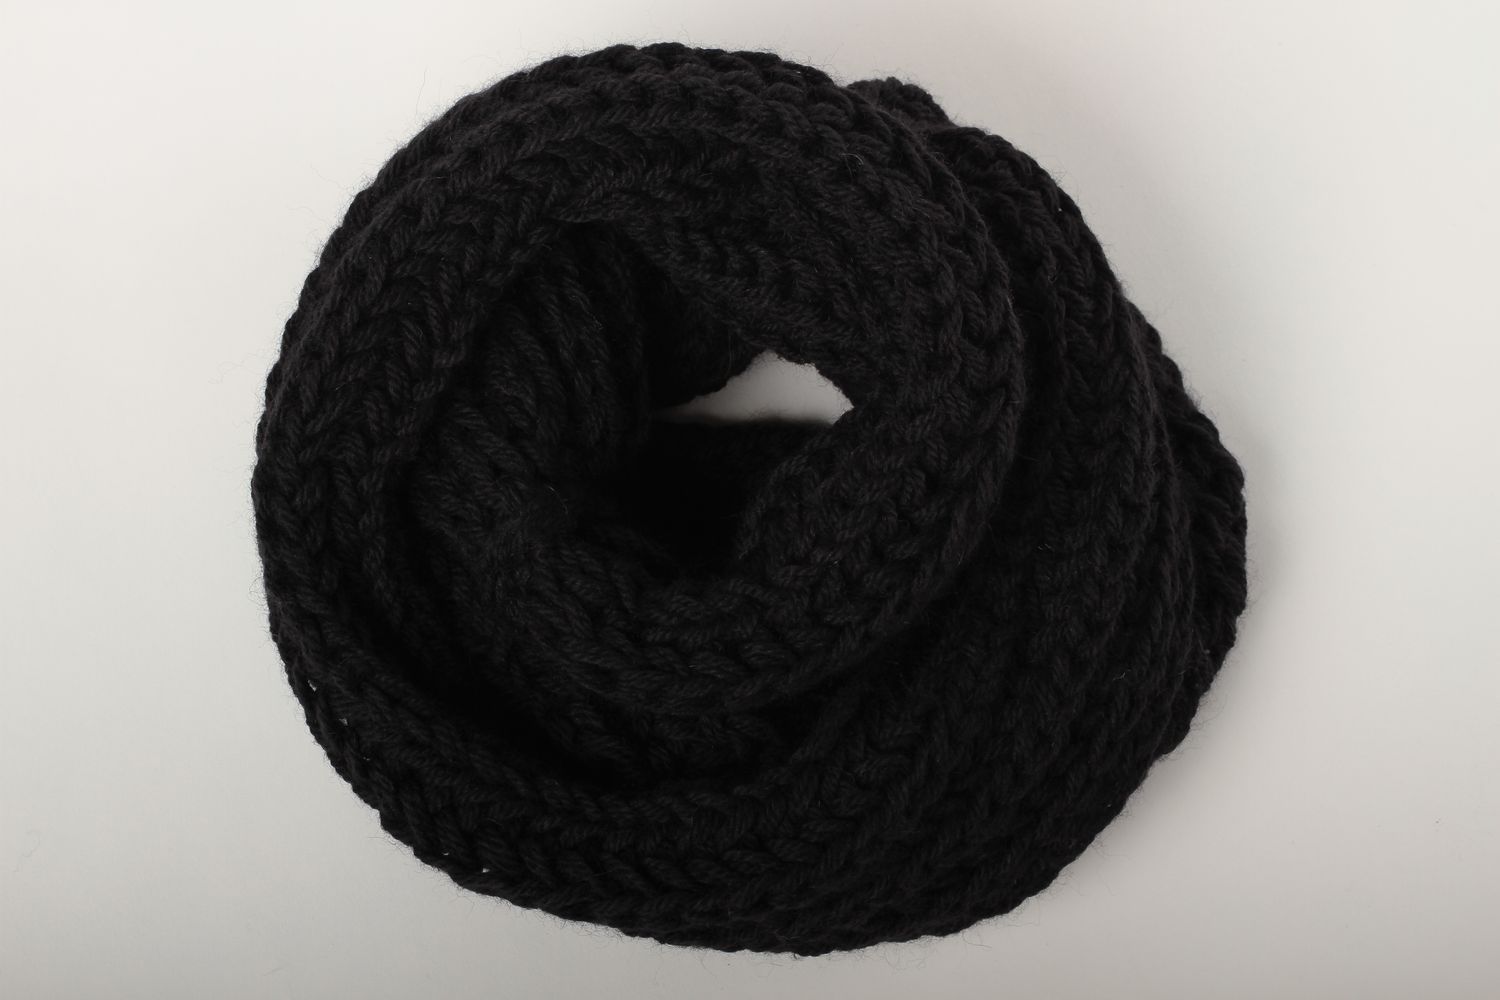 Écharpe tricot faite main Vêtement femme homme laine couleur noire Idée cadeau photo 5